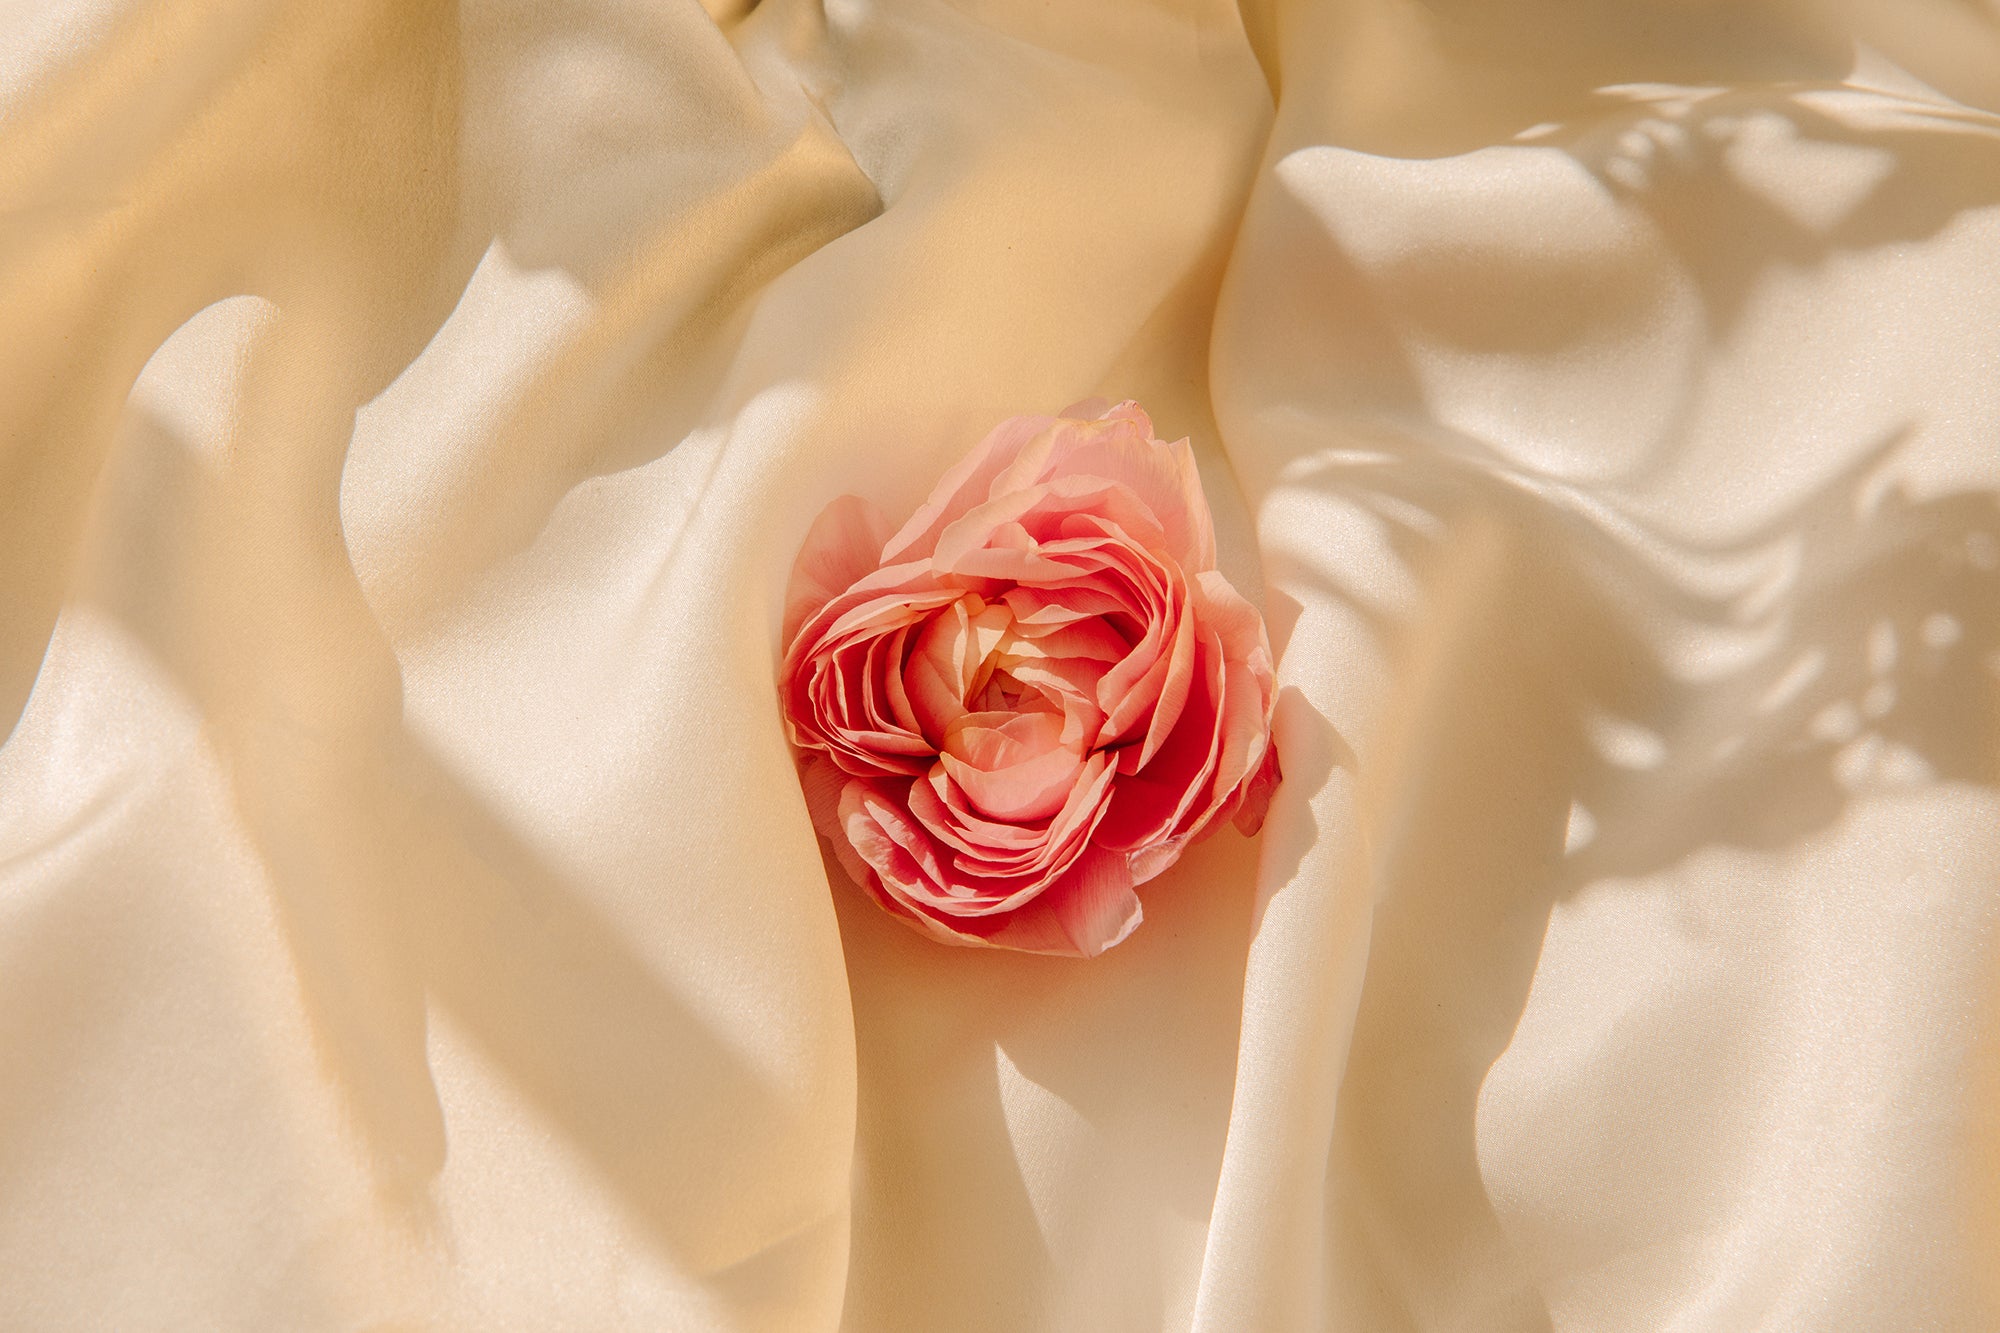 Pink rose atop ivory satin